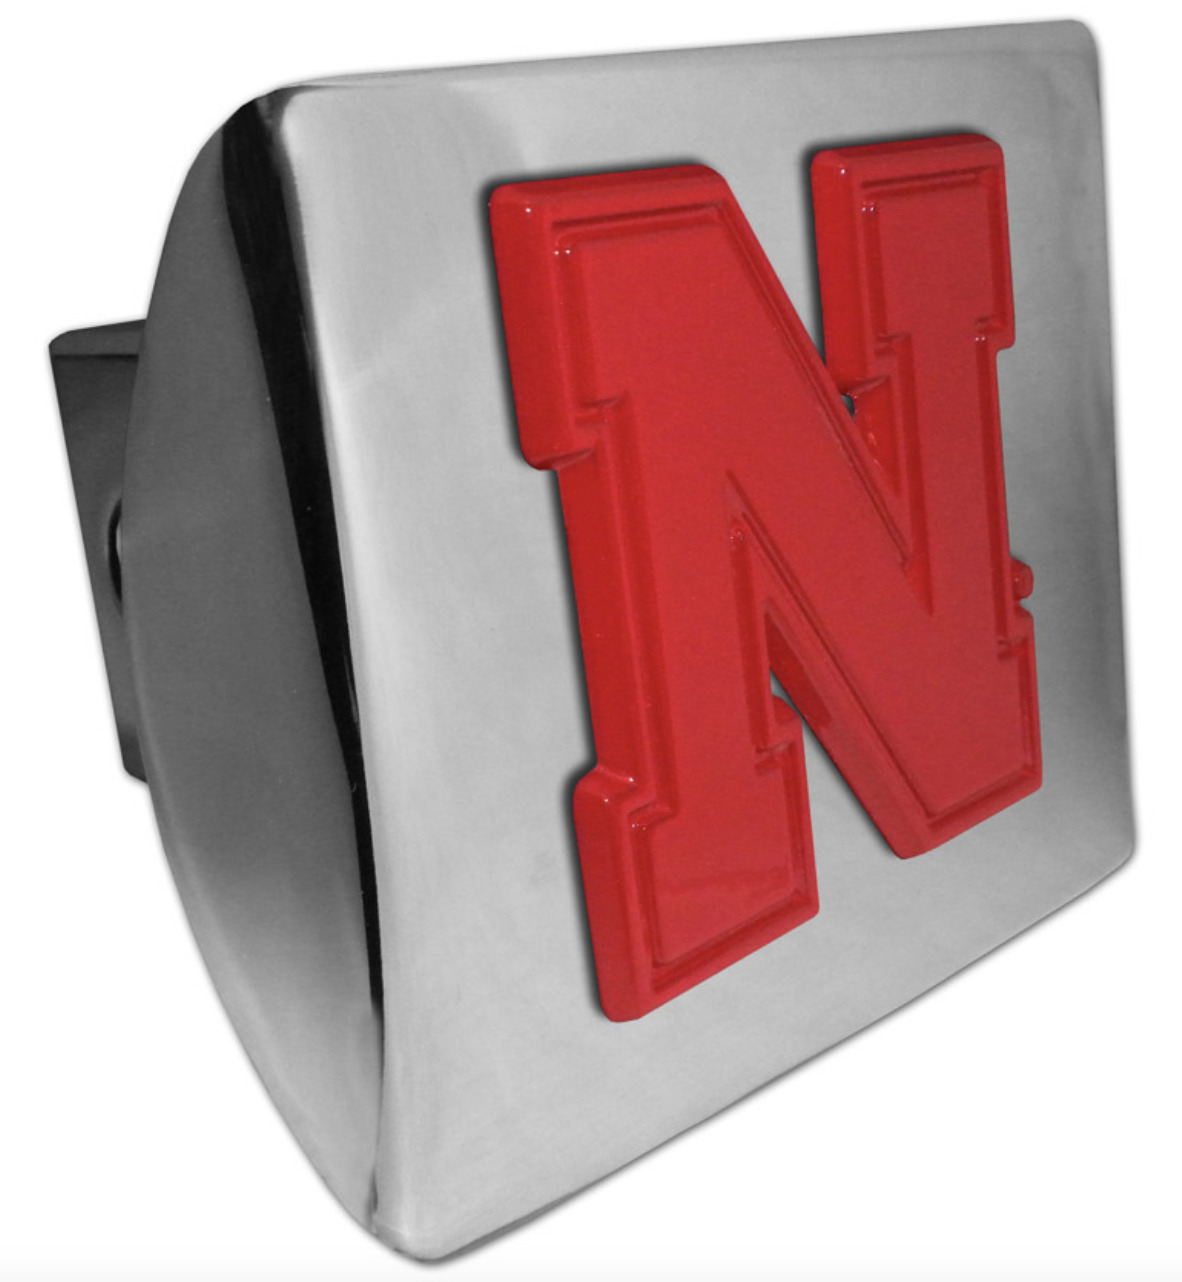 university of nebraska red emblem chrome trailer hitch cover usa made